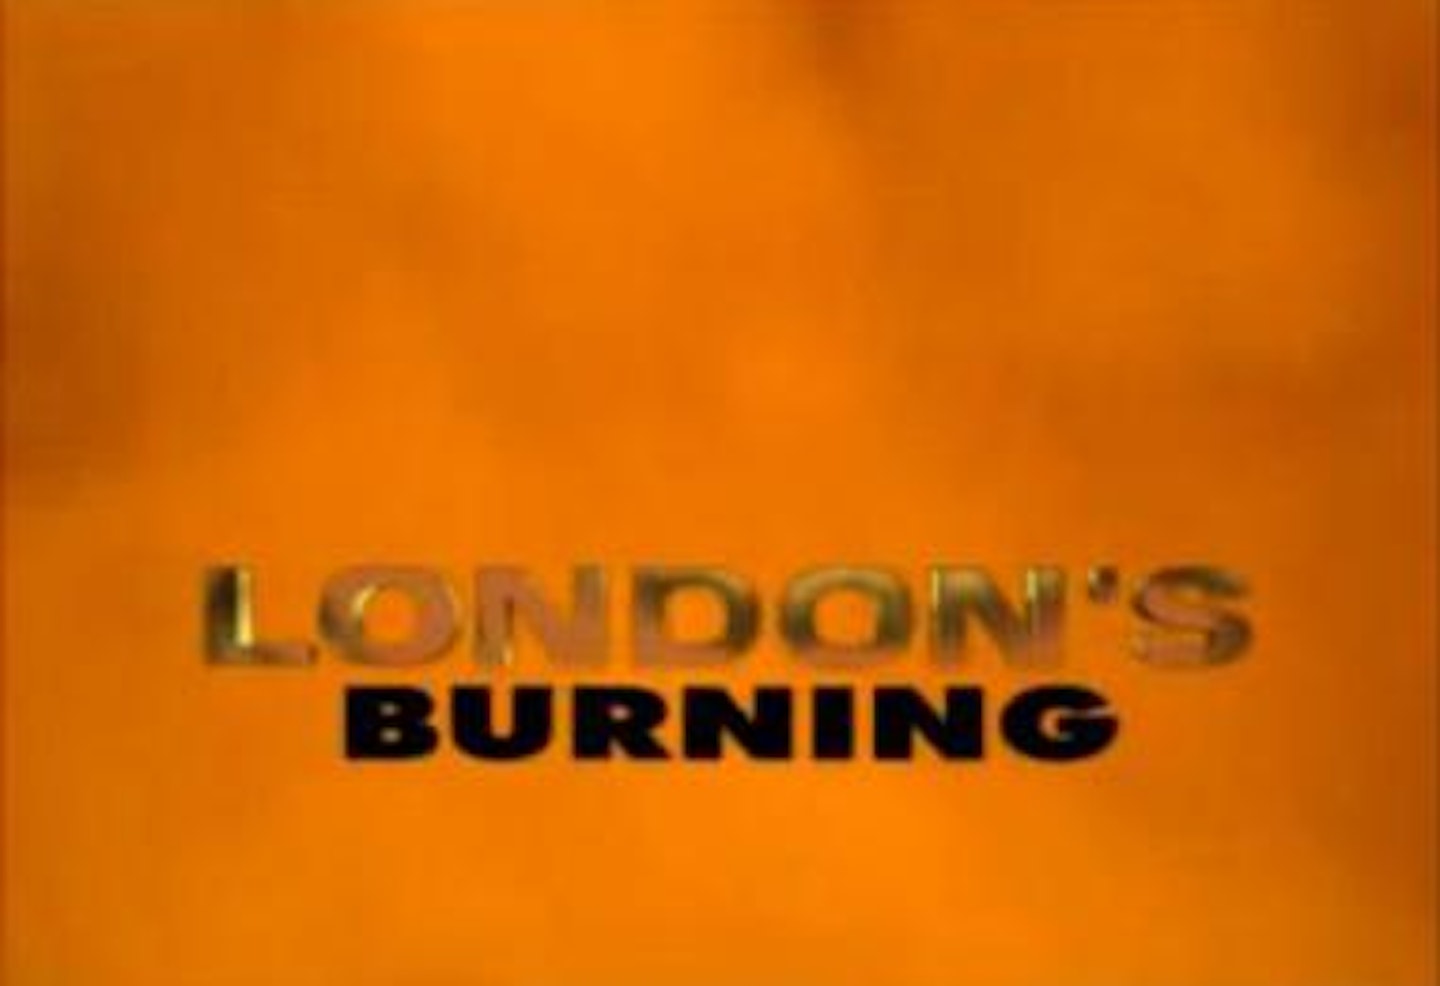 London's Burning